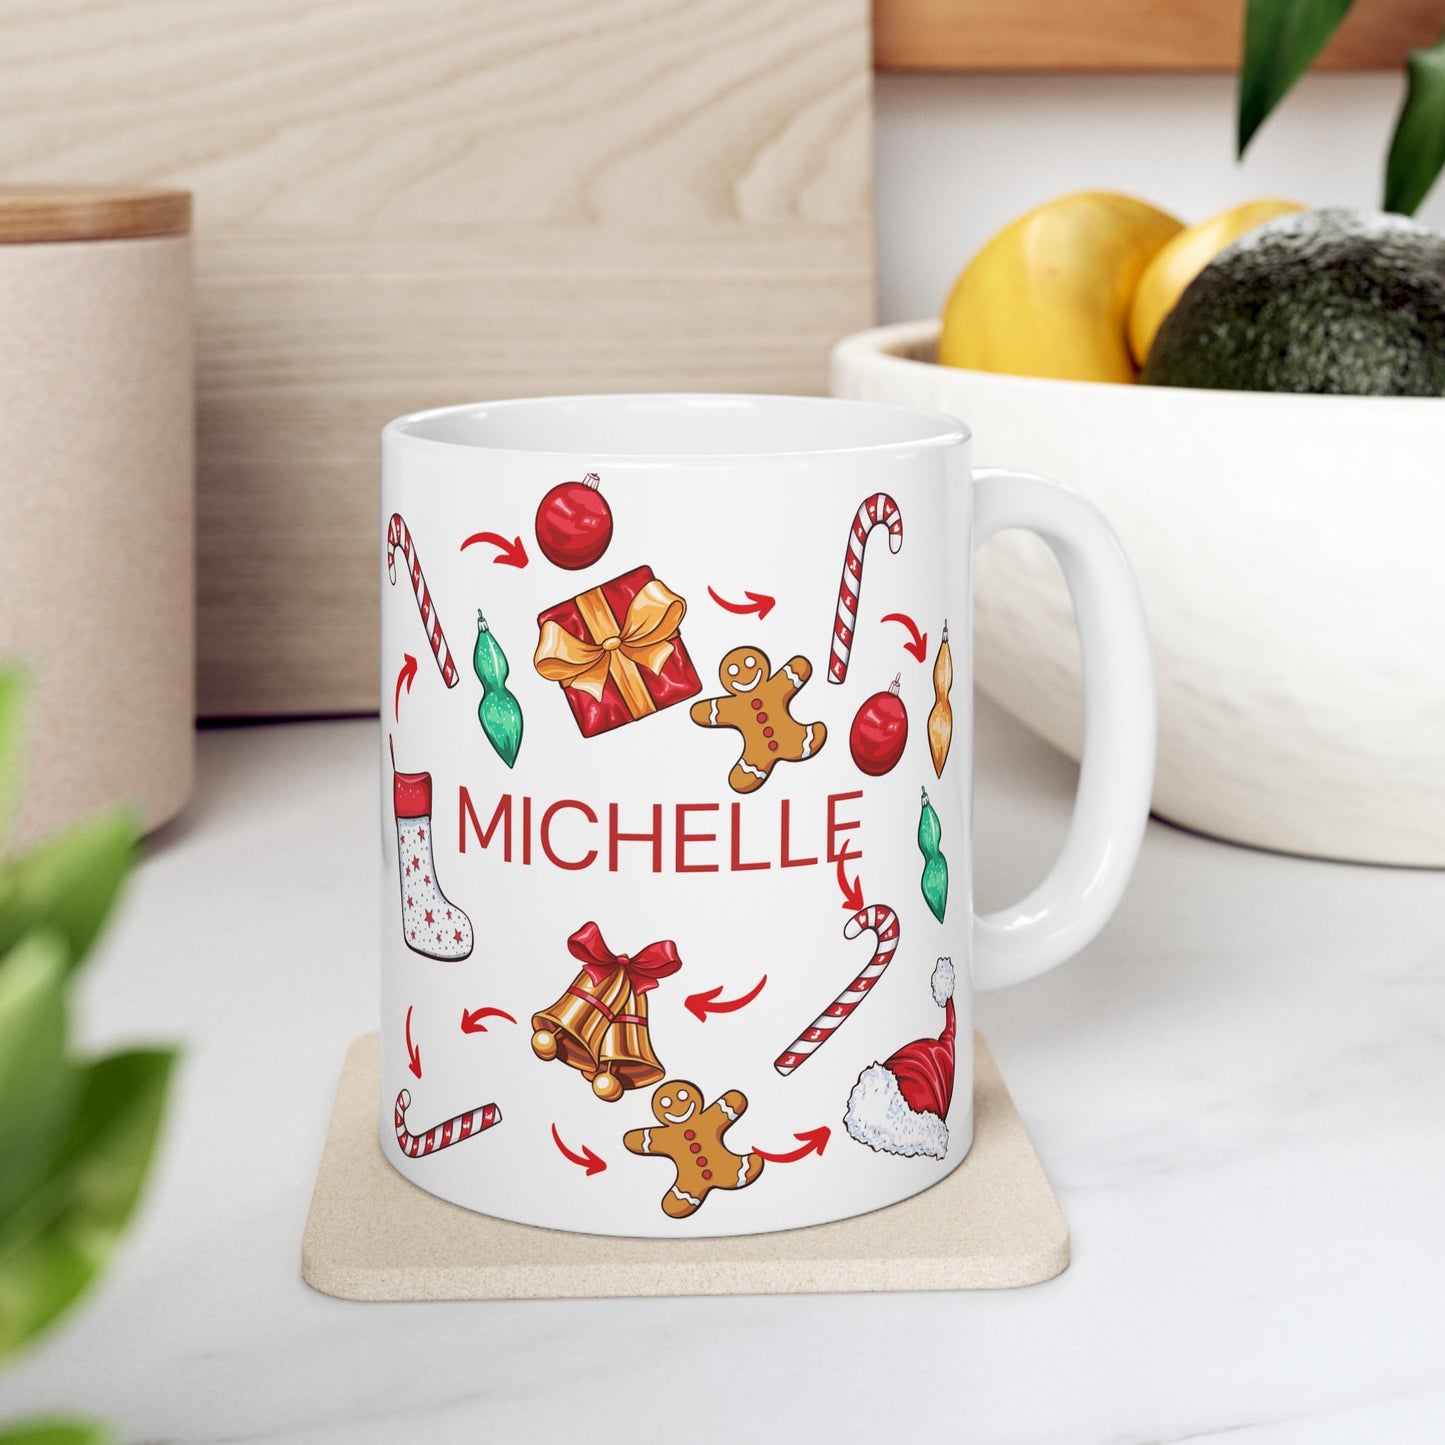 Name Tag Mug, Gift For Her Mug, Gift For Him Mug, Holiday Mug, Coffee Mug, Cute Mug, Christmas Mug, Ceramic Mug